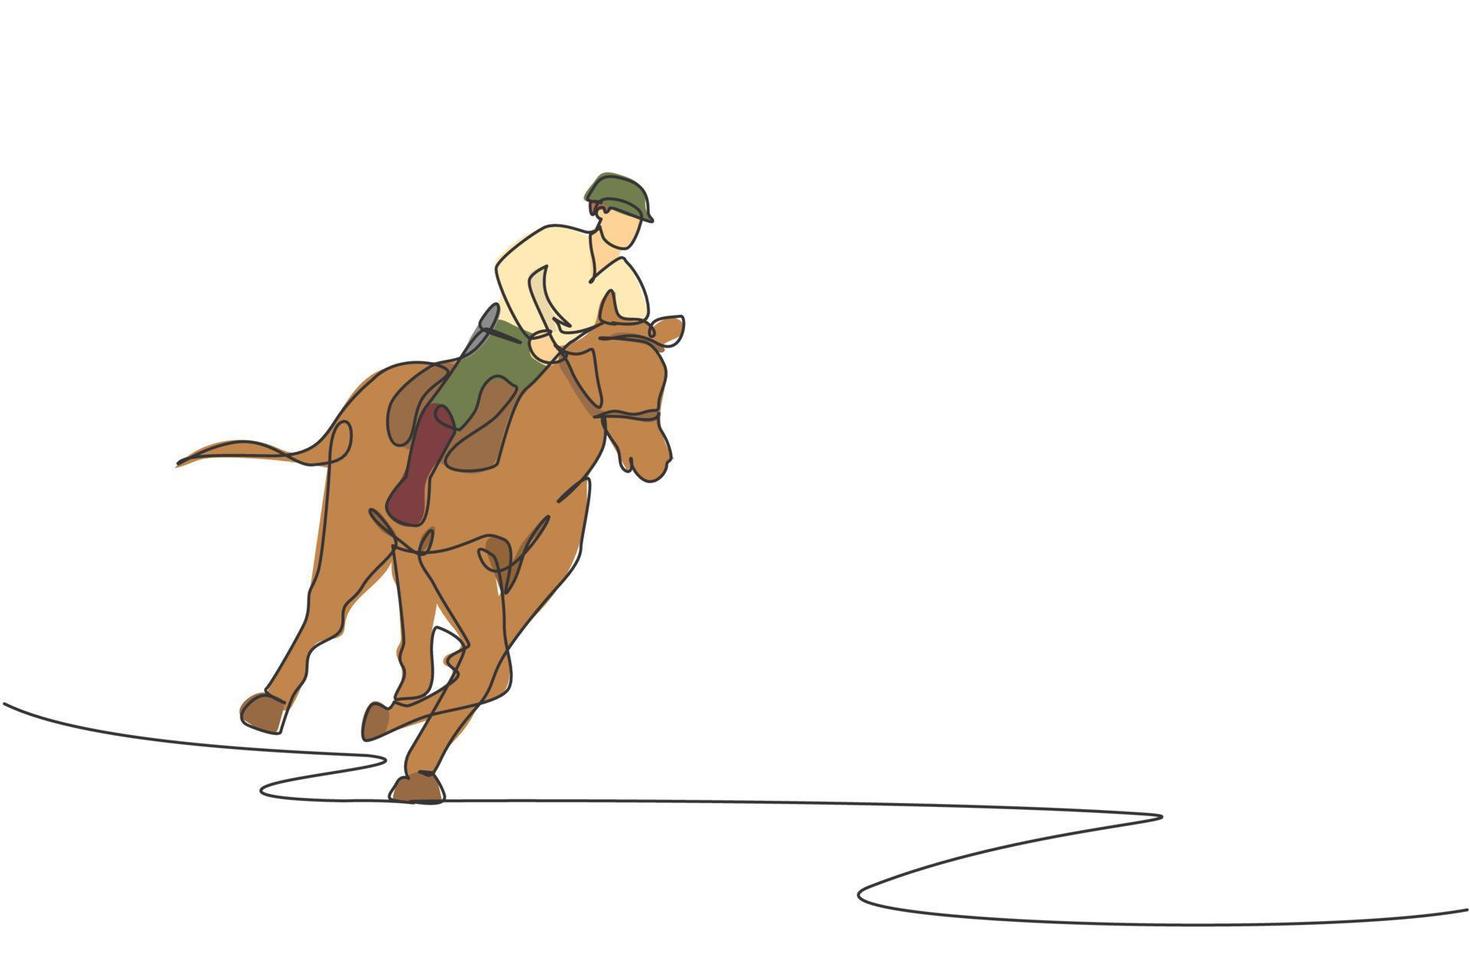 único desenho de linha contínua de jovem cavaleiro profissional correndo com um cavalo ao redor dos estábulos. conceito de processo de treinamento de esporte equestre. ilustração em vetor design de desenho de uma linha na moda